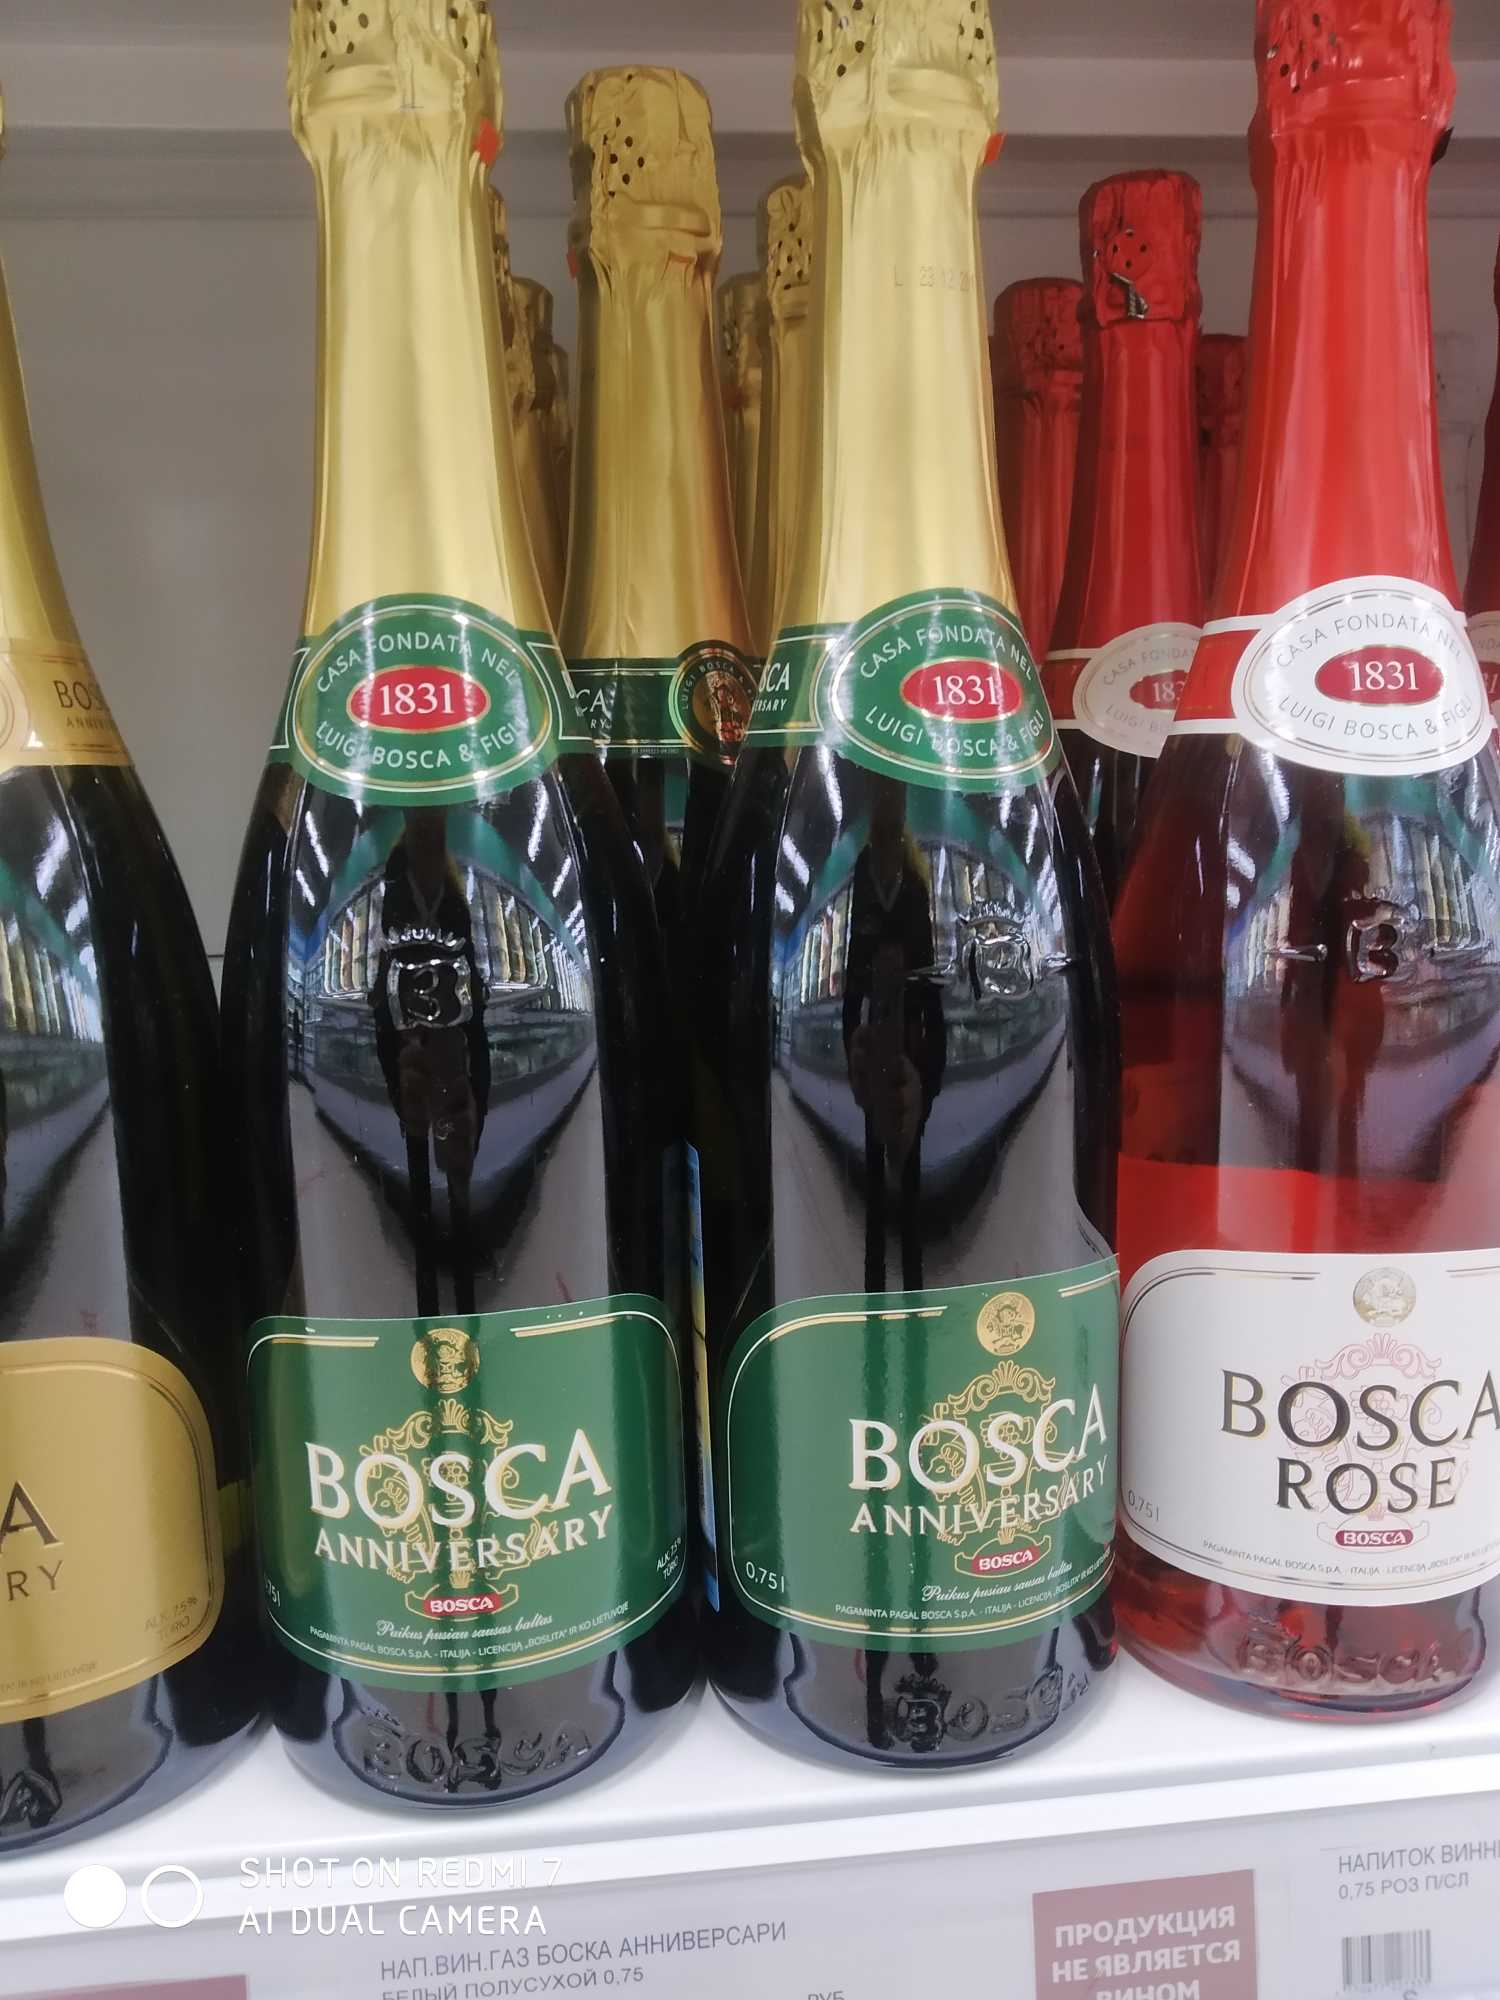 Боско красная цена. Винный напиток Bosca Боско. Боско шампанское Анниверсари. Напиток винный Bosca Анниверсари. Винный напиток Bosca Rose 0.75.